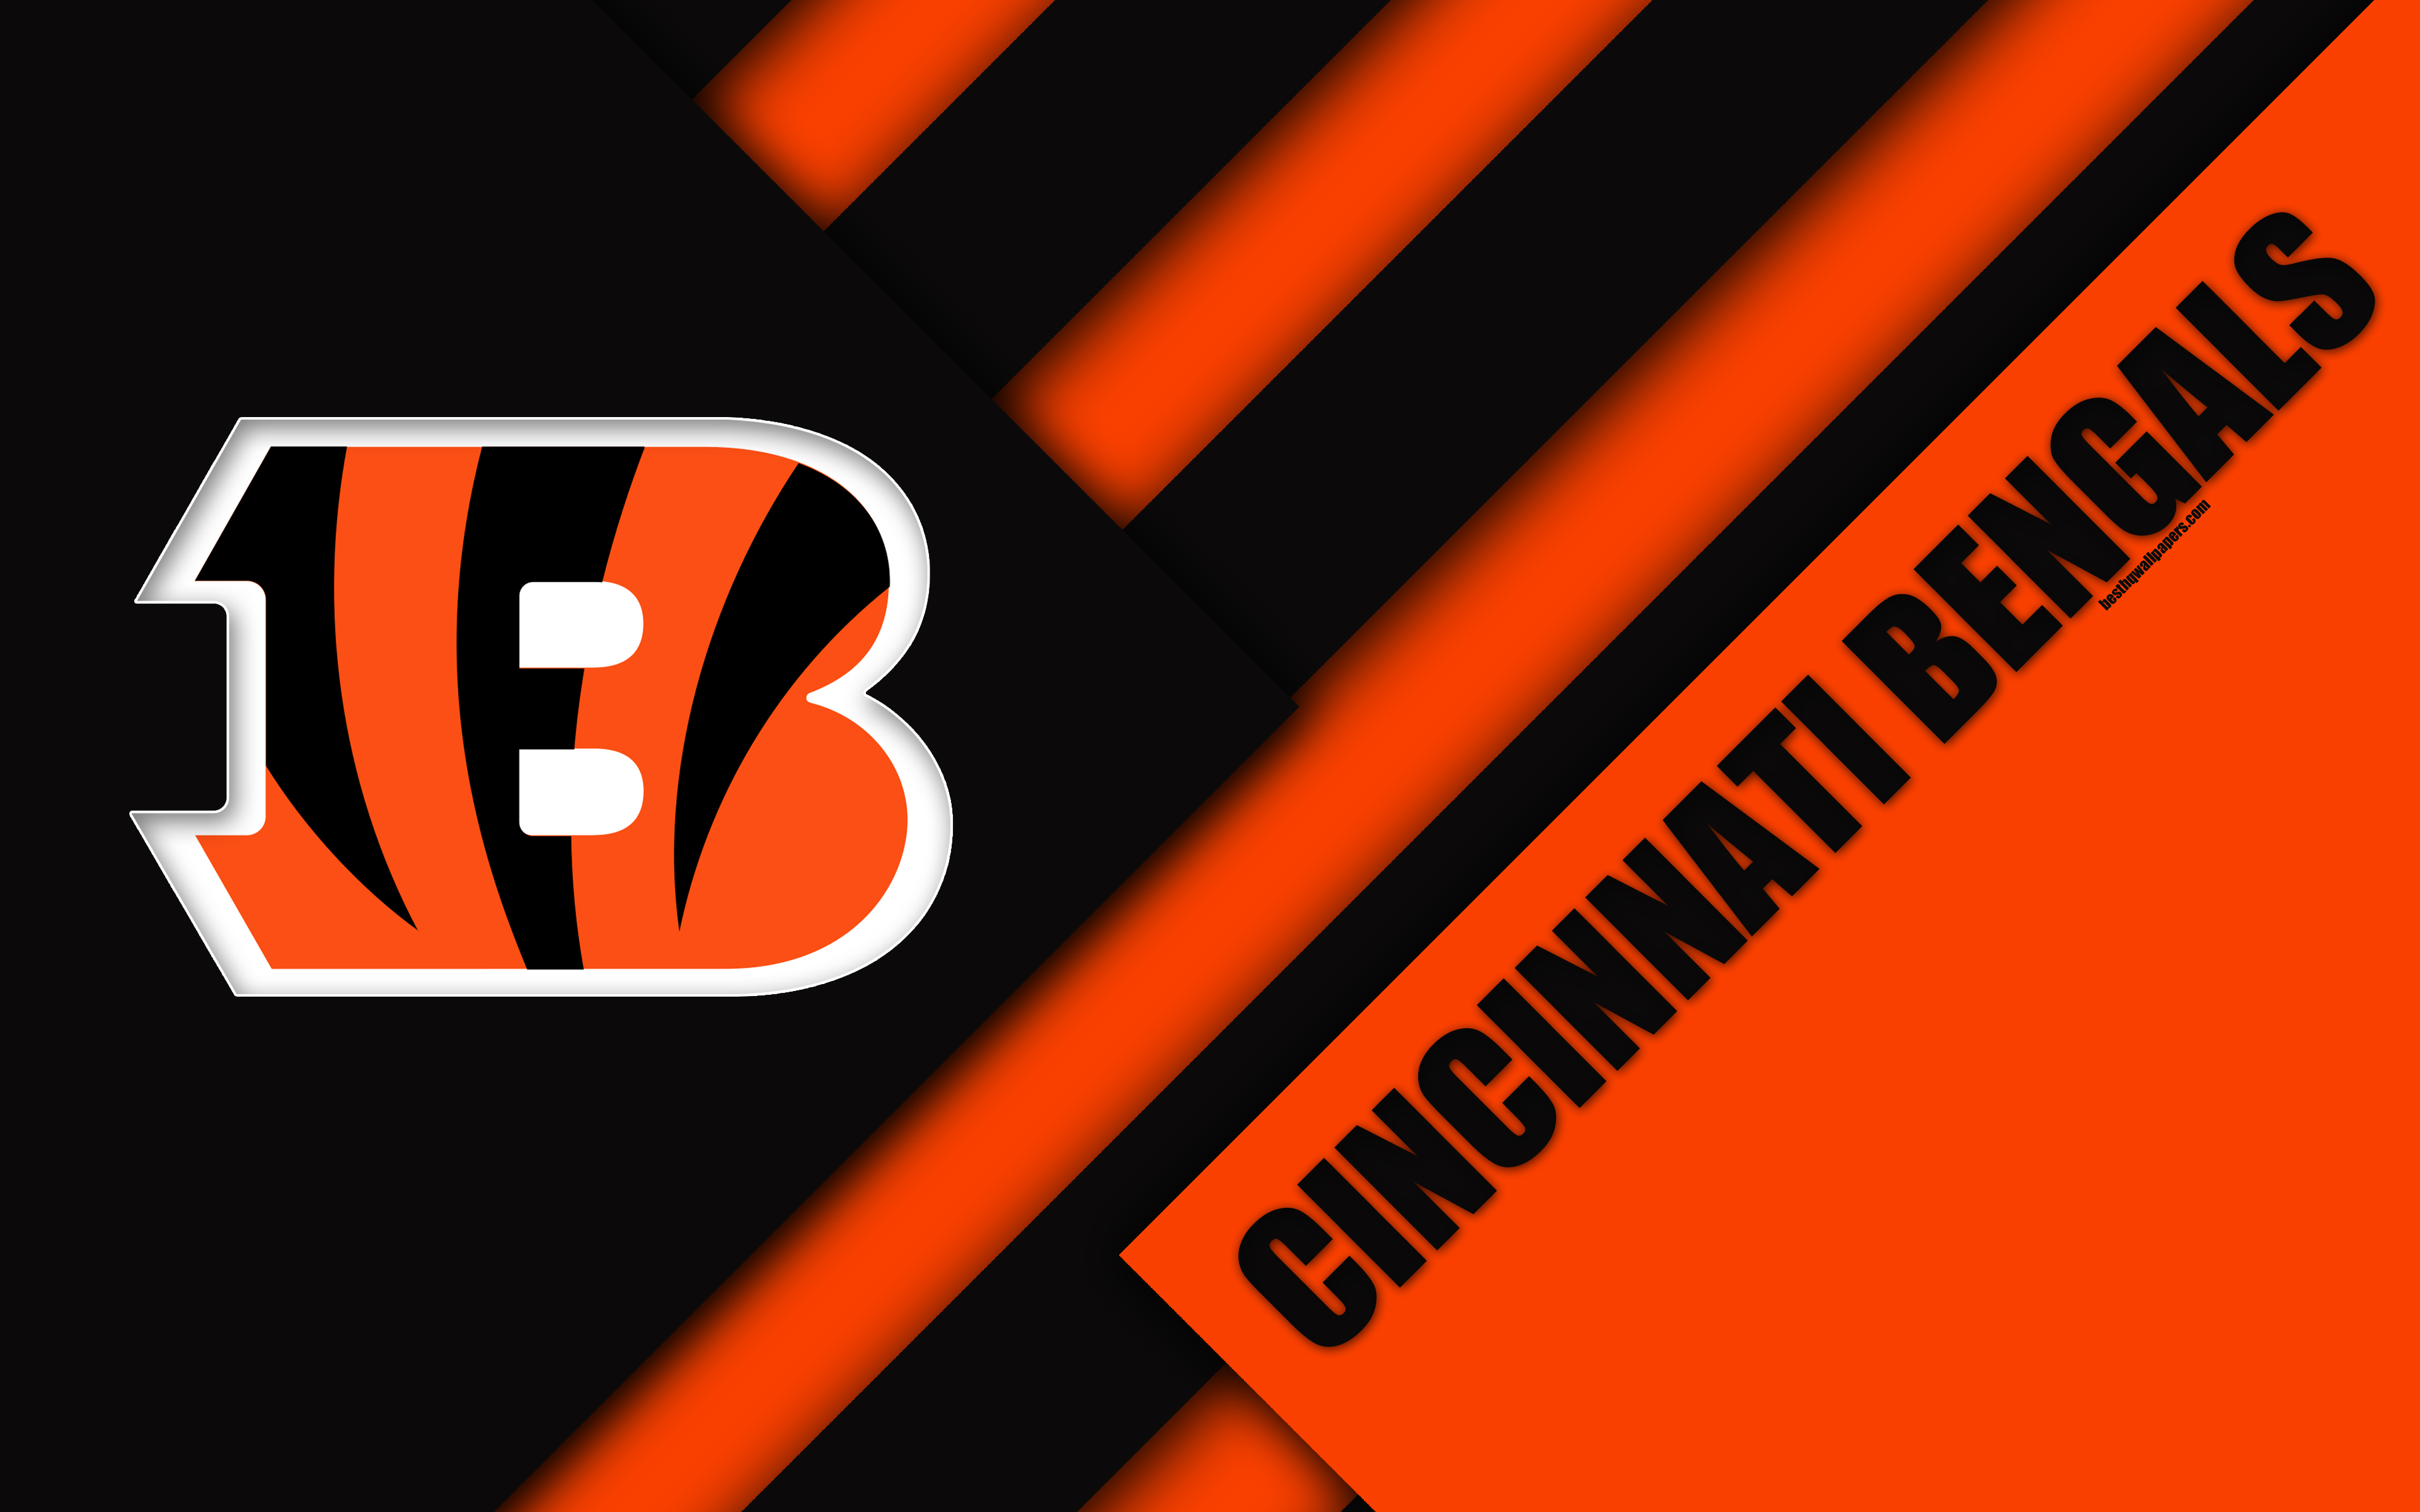 Download wallpapers Cincinnati Bengals 4k logo NFL black 3840x2400